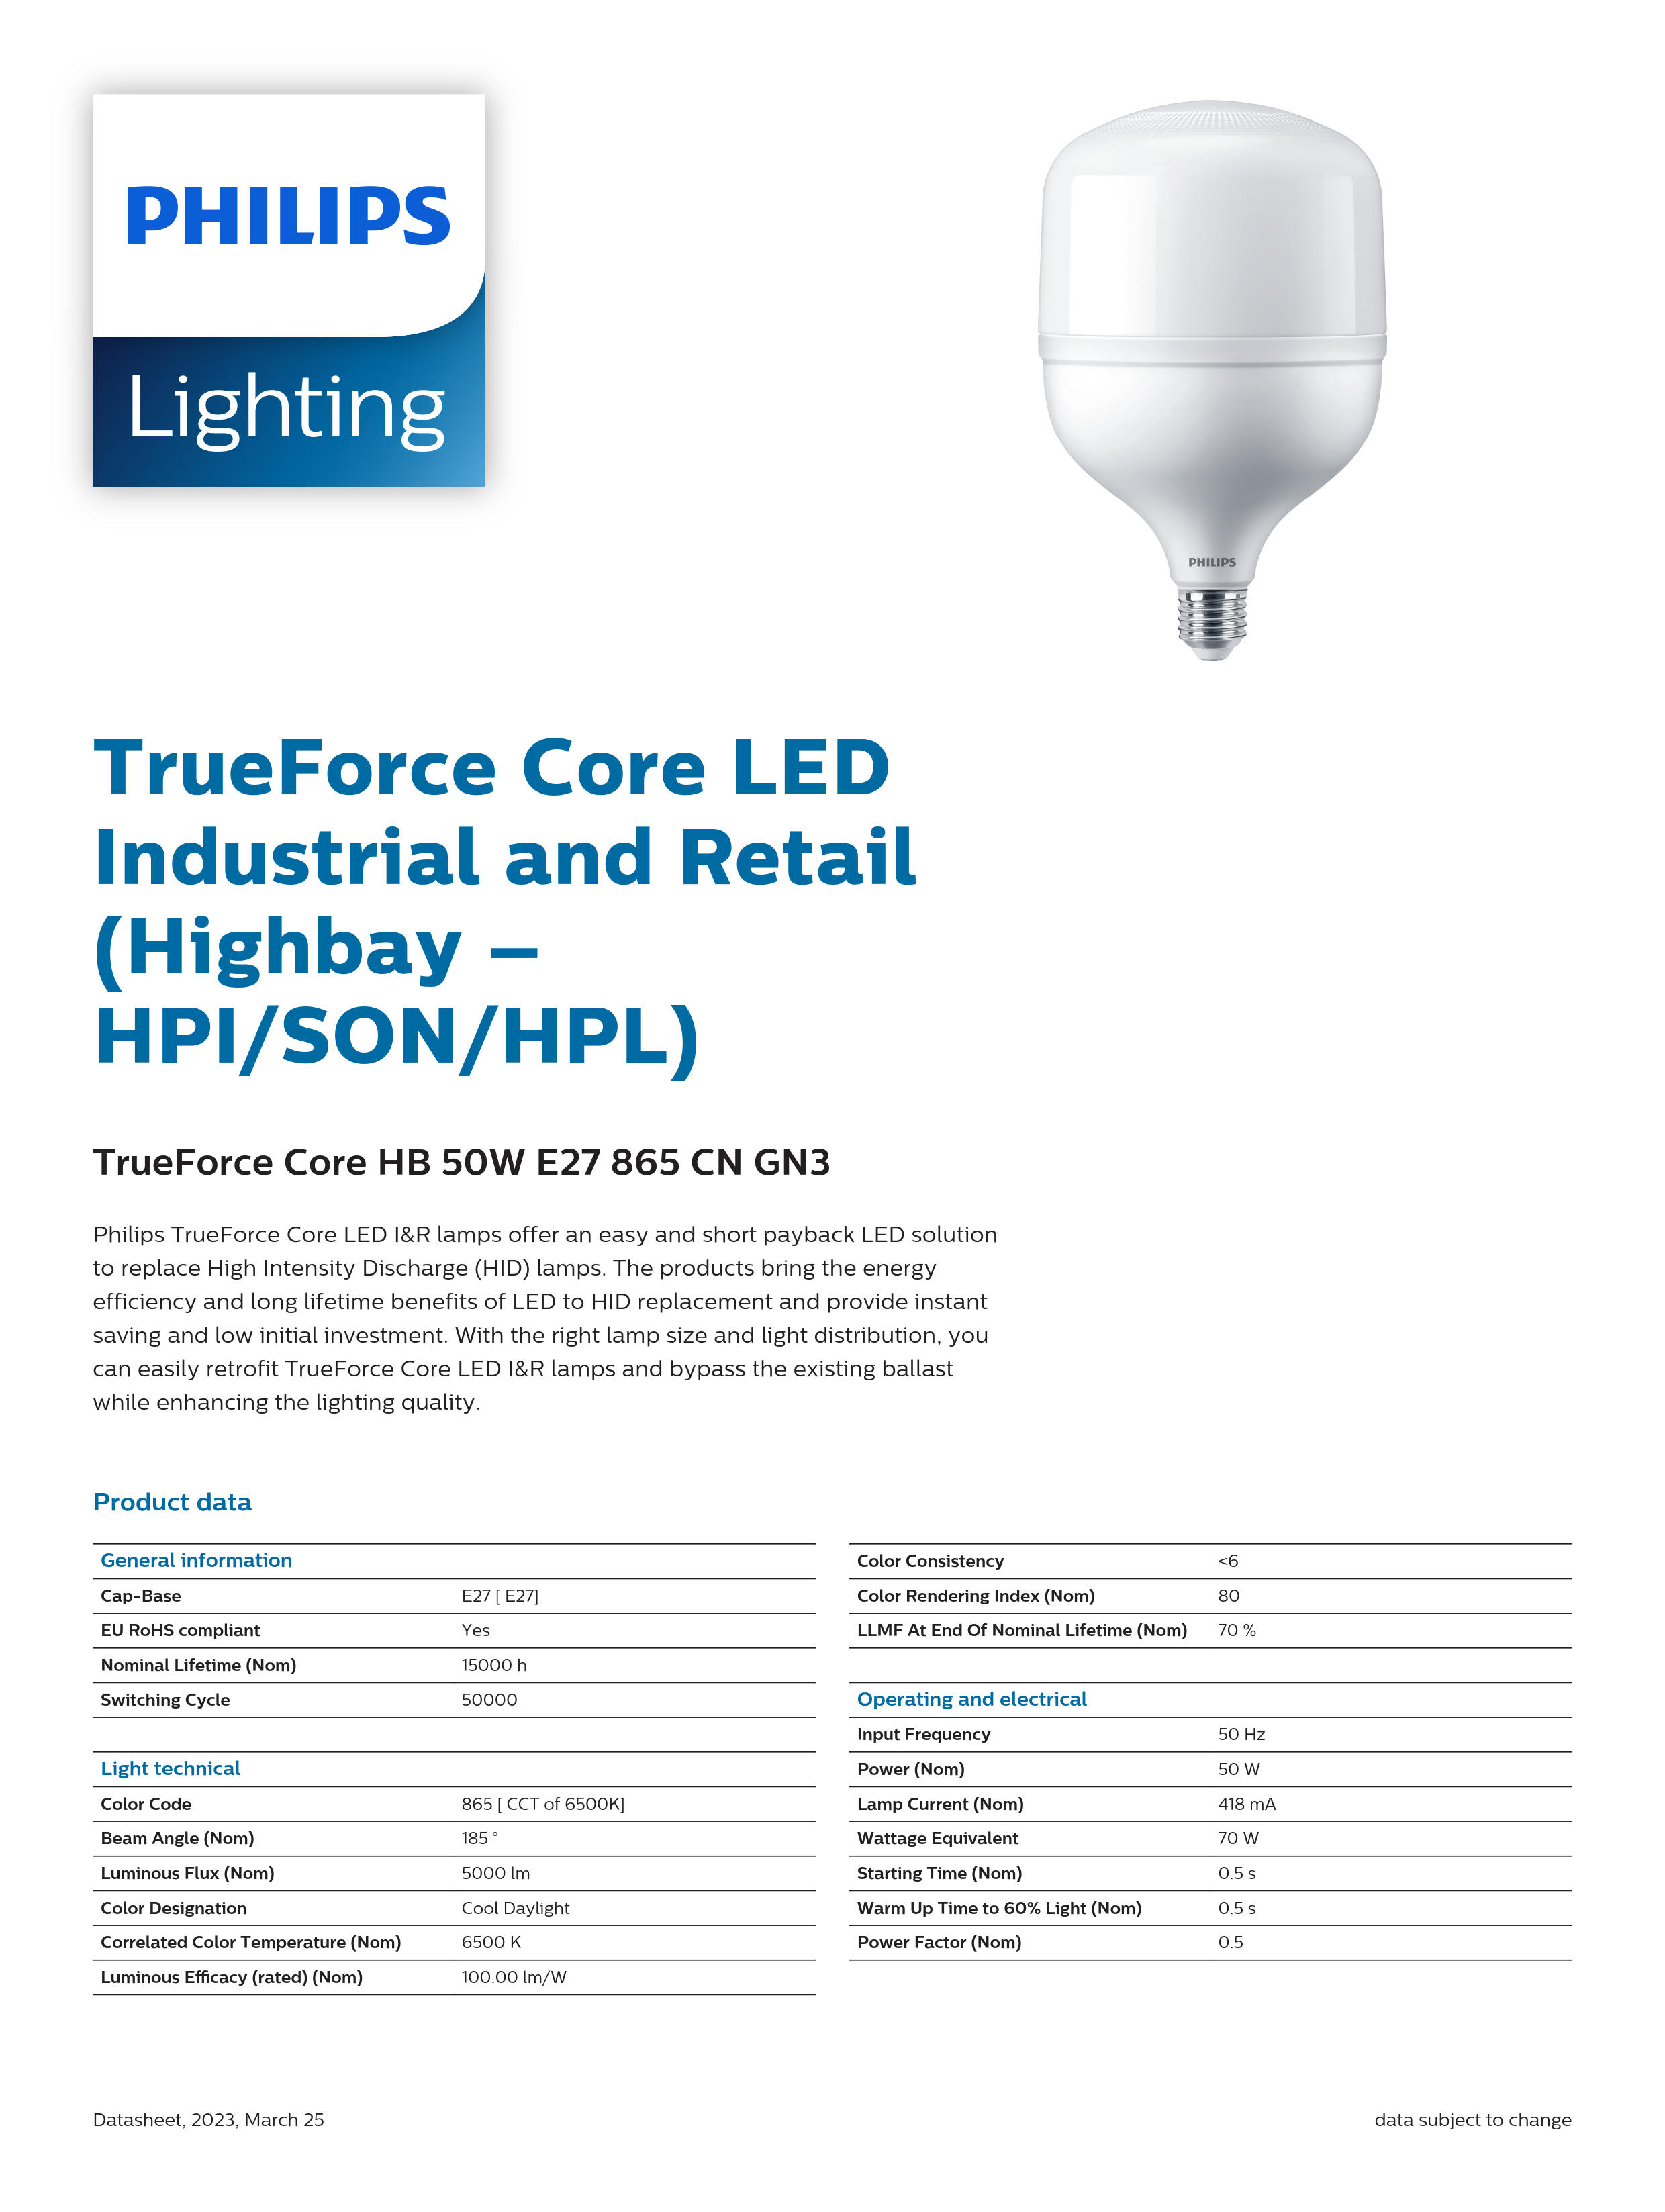 PHILIPS LED Bulb TrueForce Core HB 50W E27 865 CN GN3 929002408810